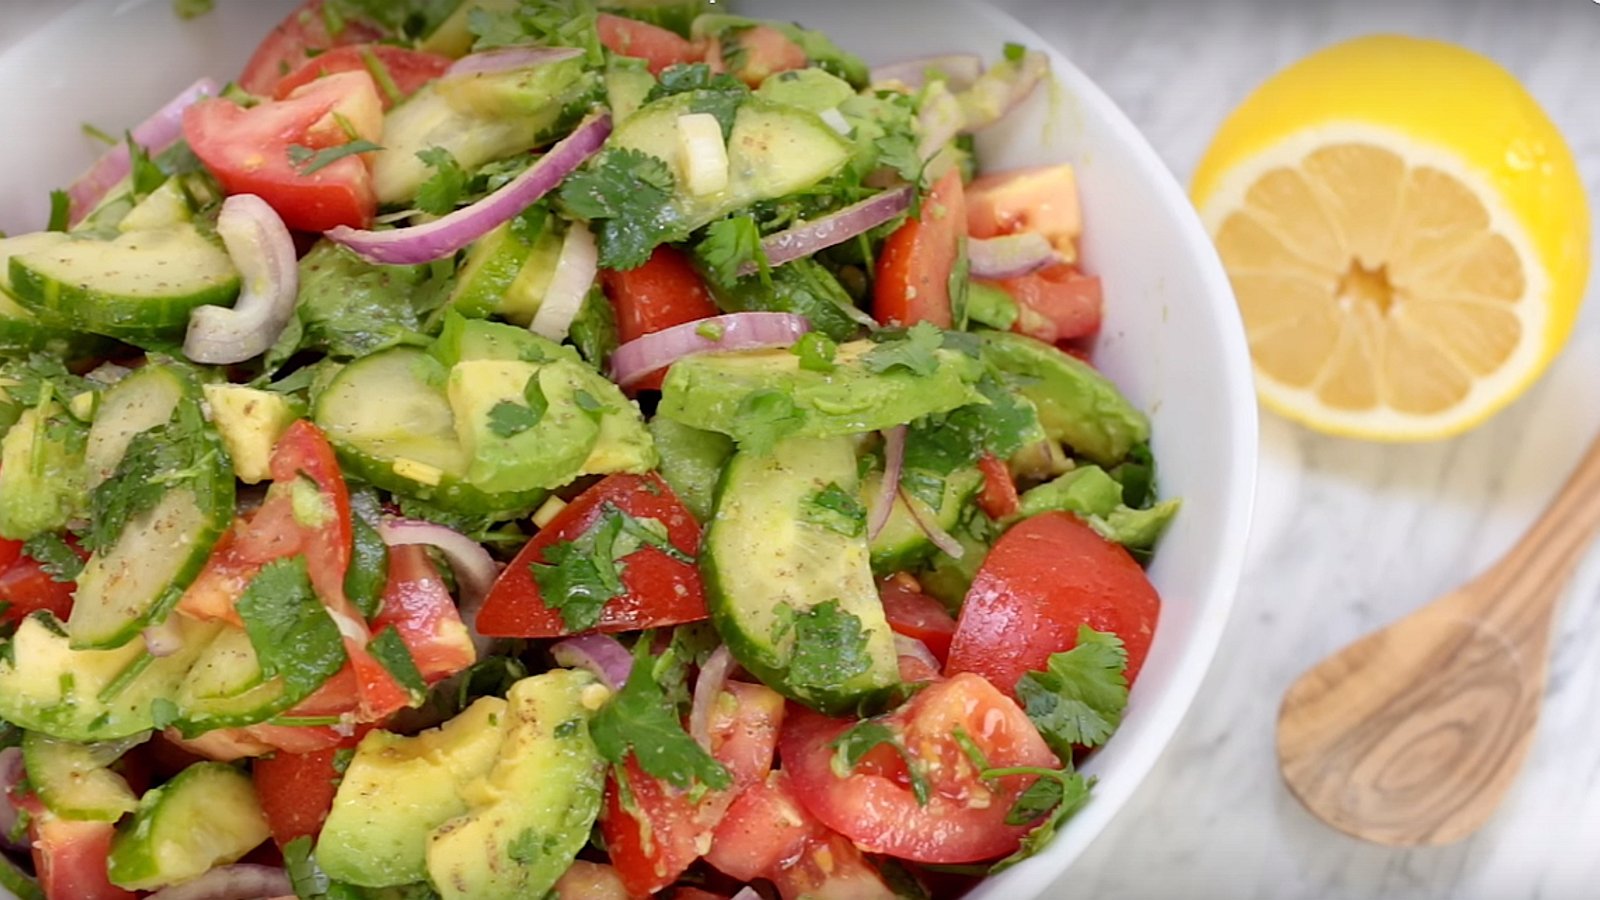 Salade et rapide, cette salade d'avocats, concombres et tomates plaira à tous!